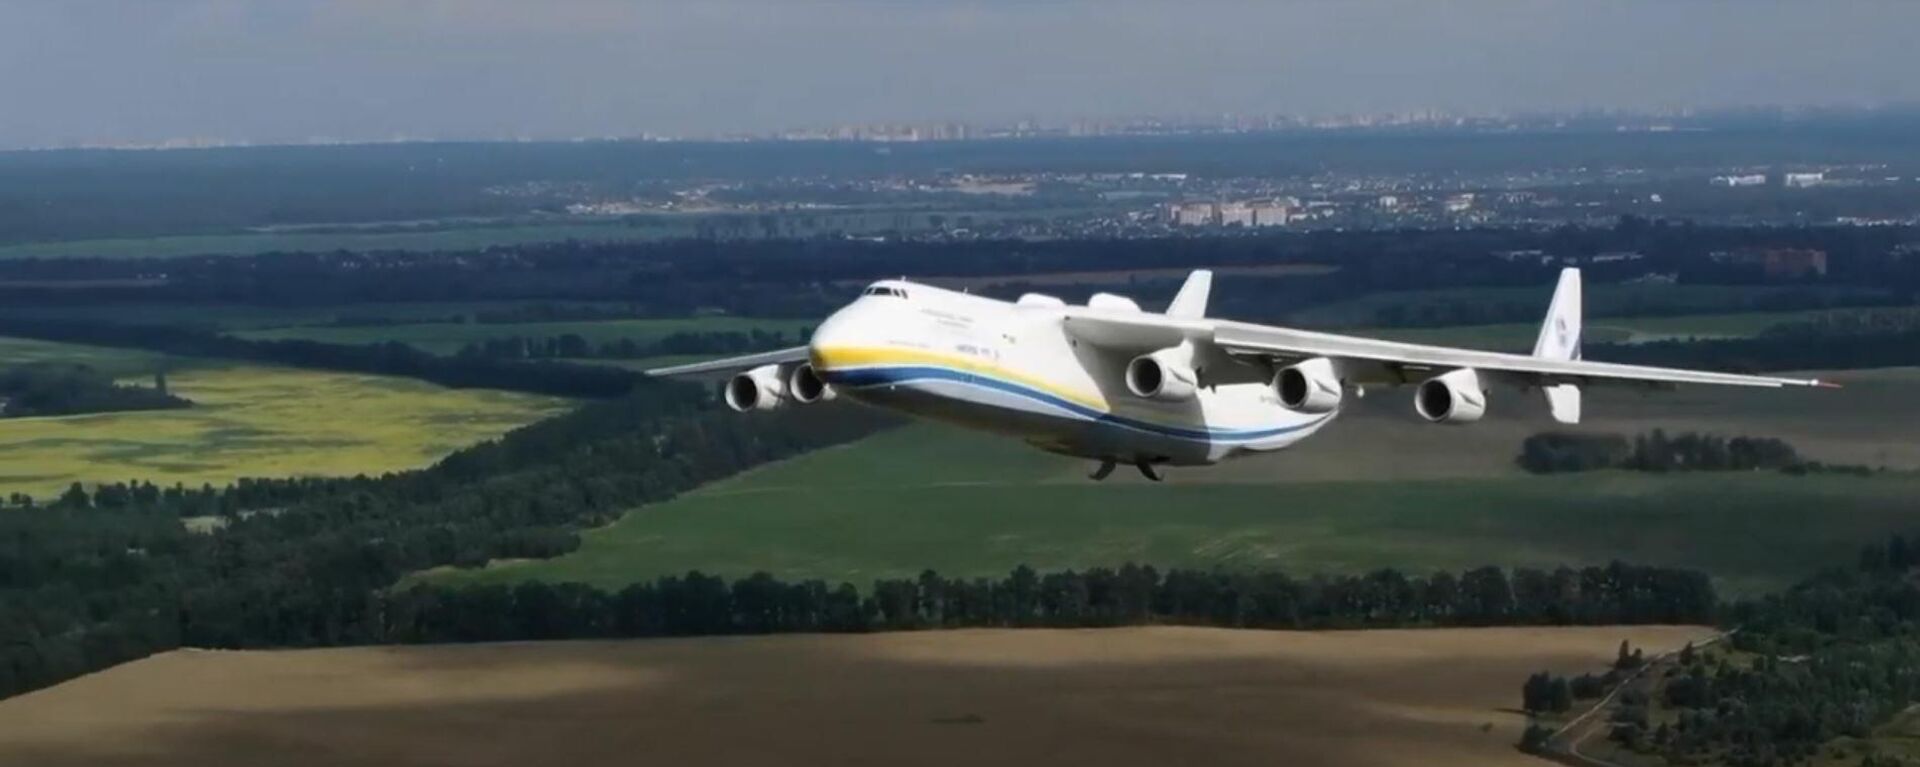 Despegue del An-225 visto desde un dron - Sputnik Mundo, 1920, 09.07.2021